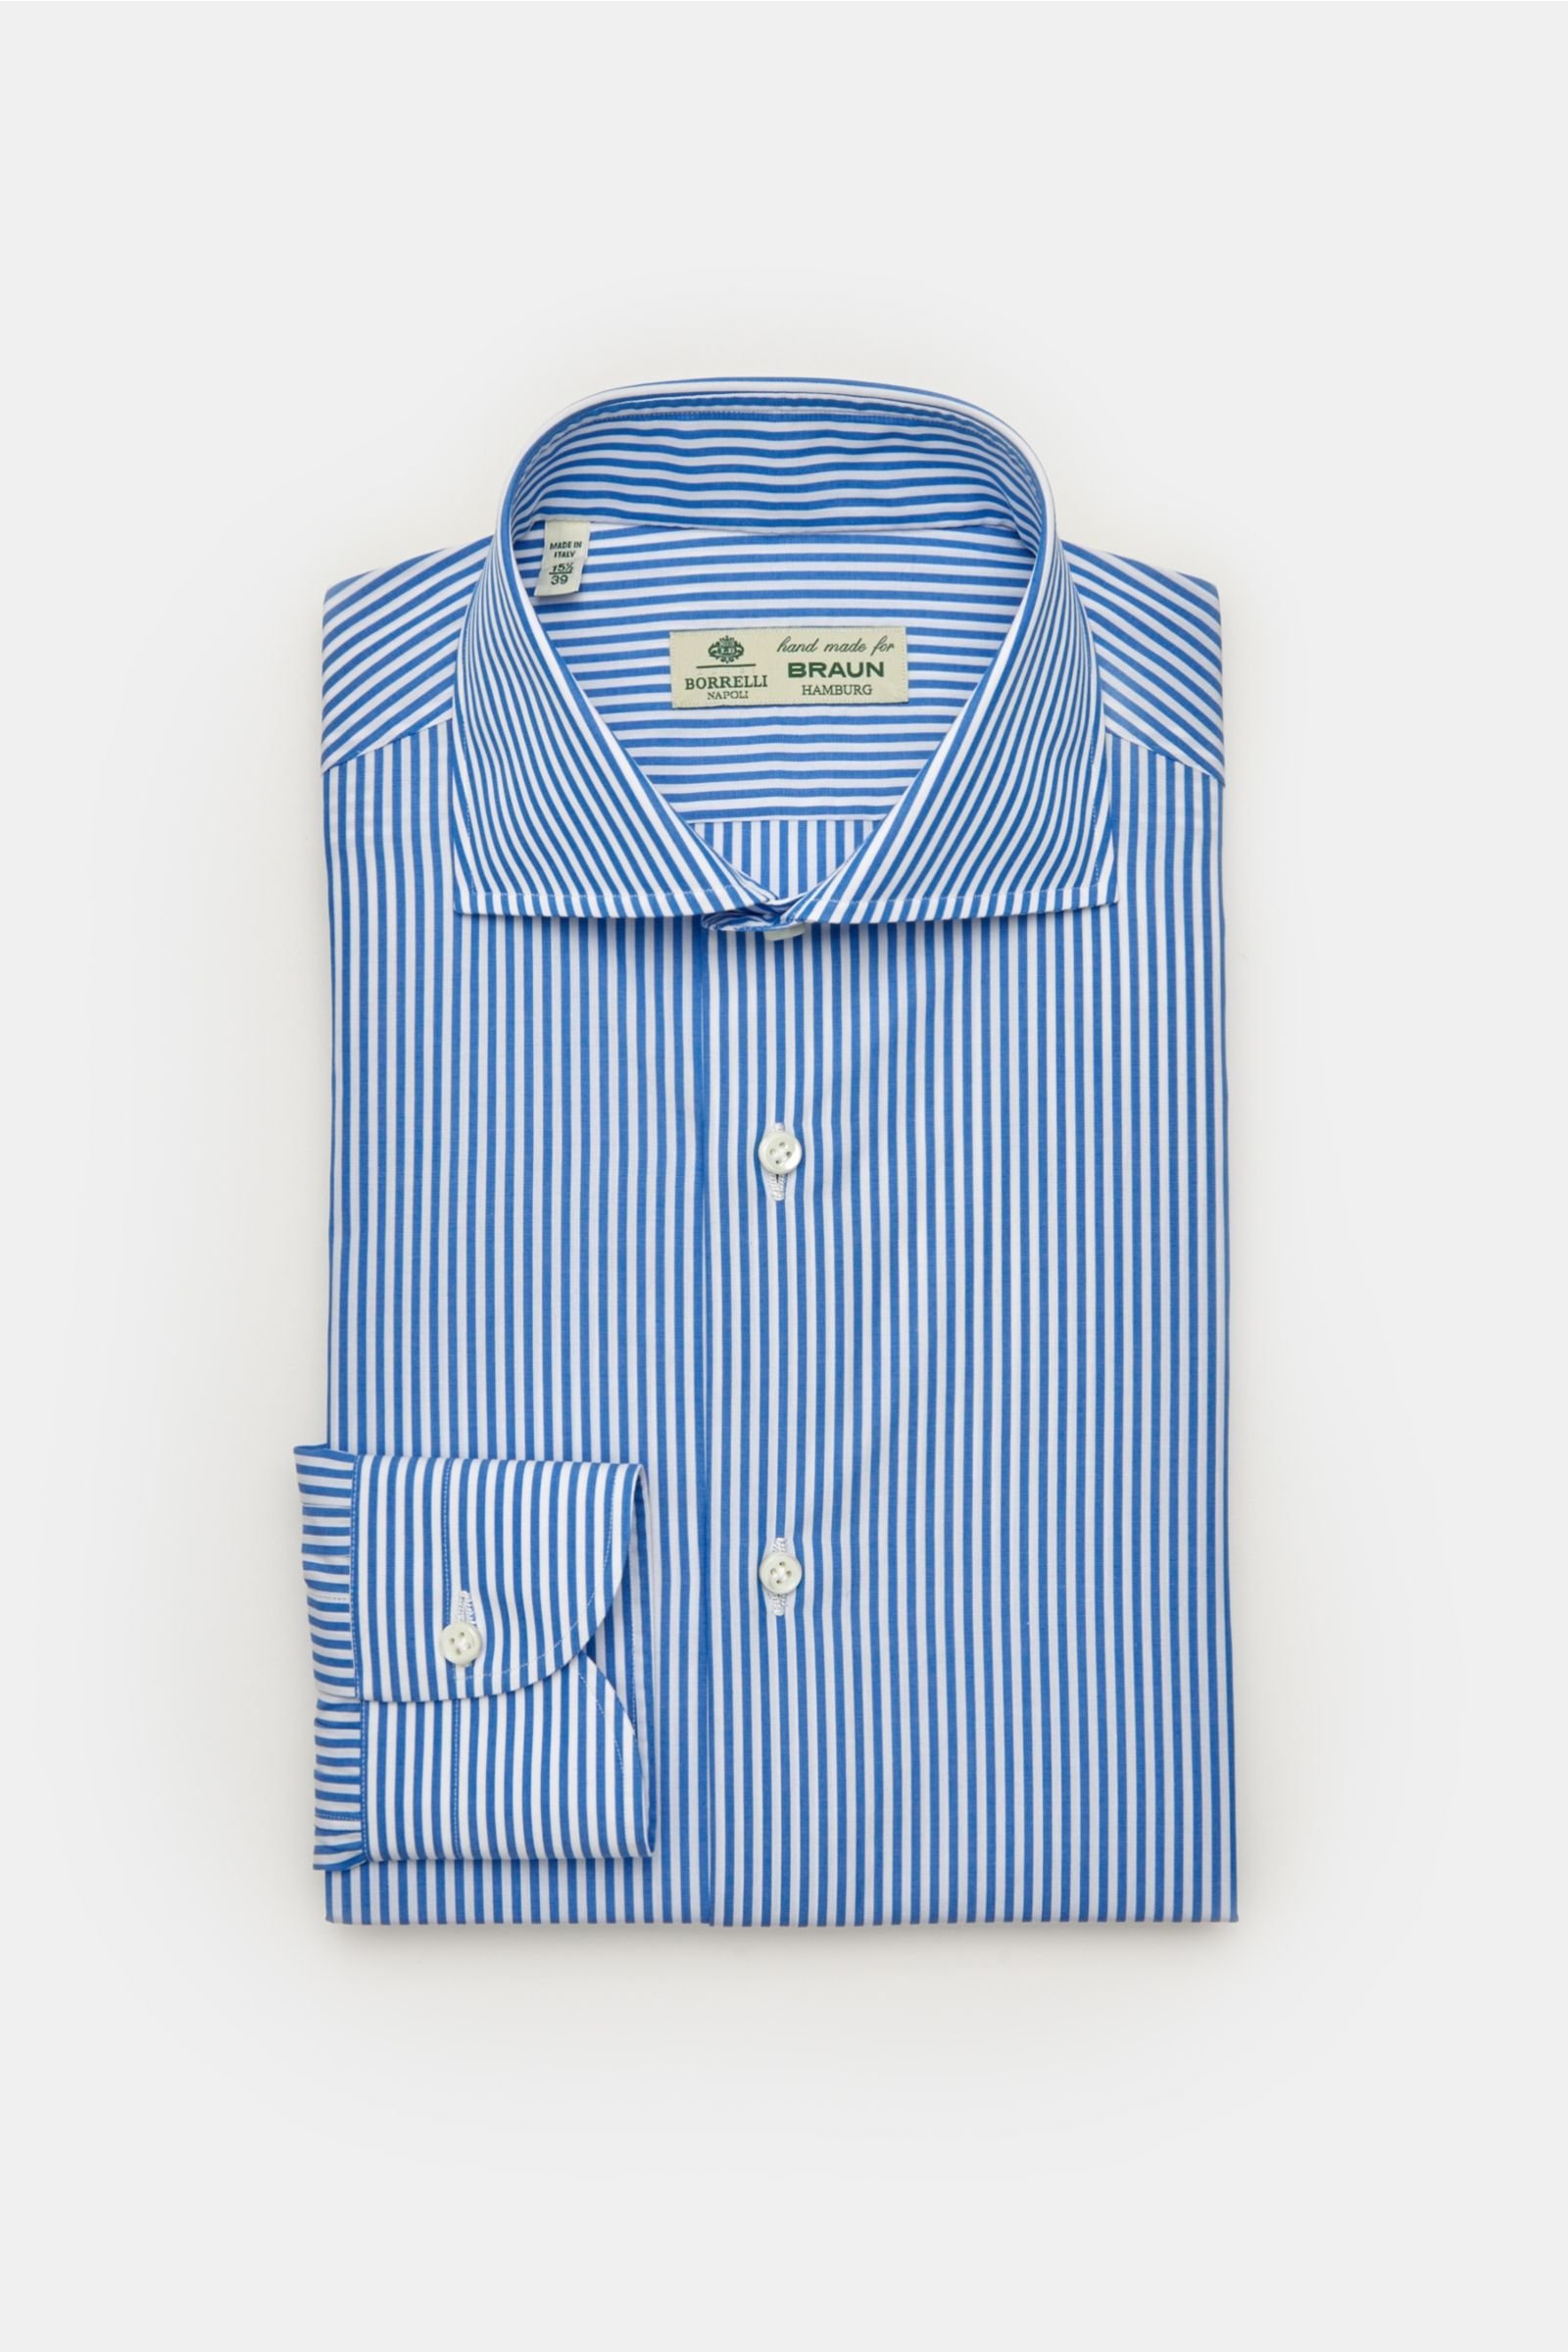 Business shirt 'Nando' shark collar smoky blue striped